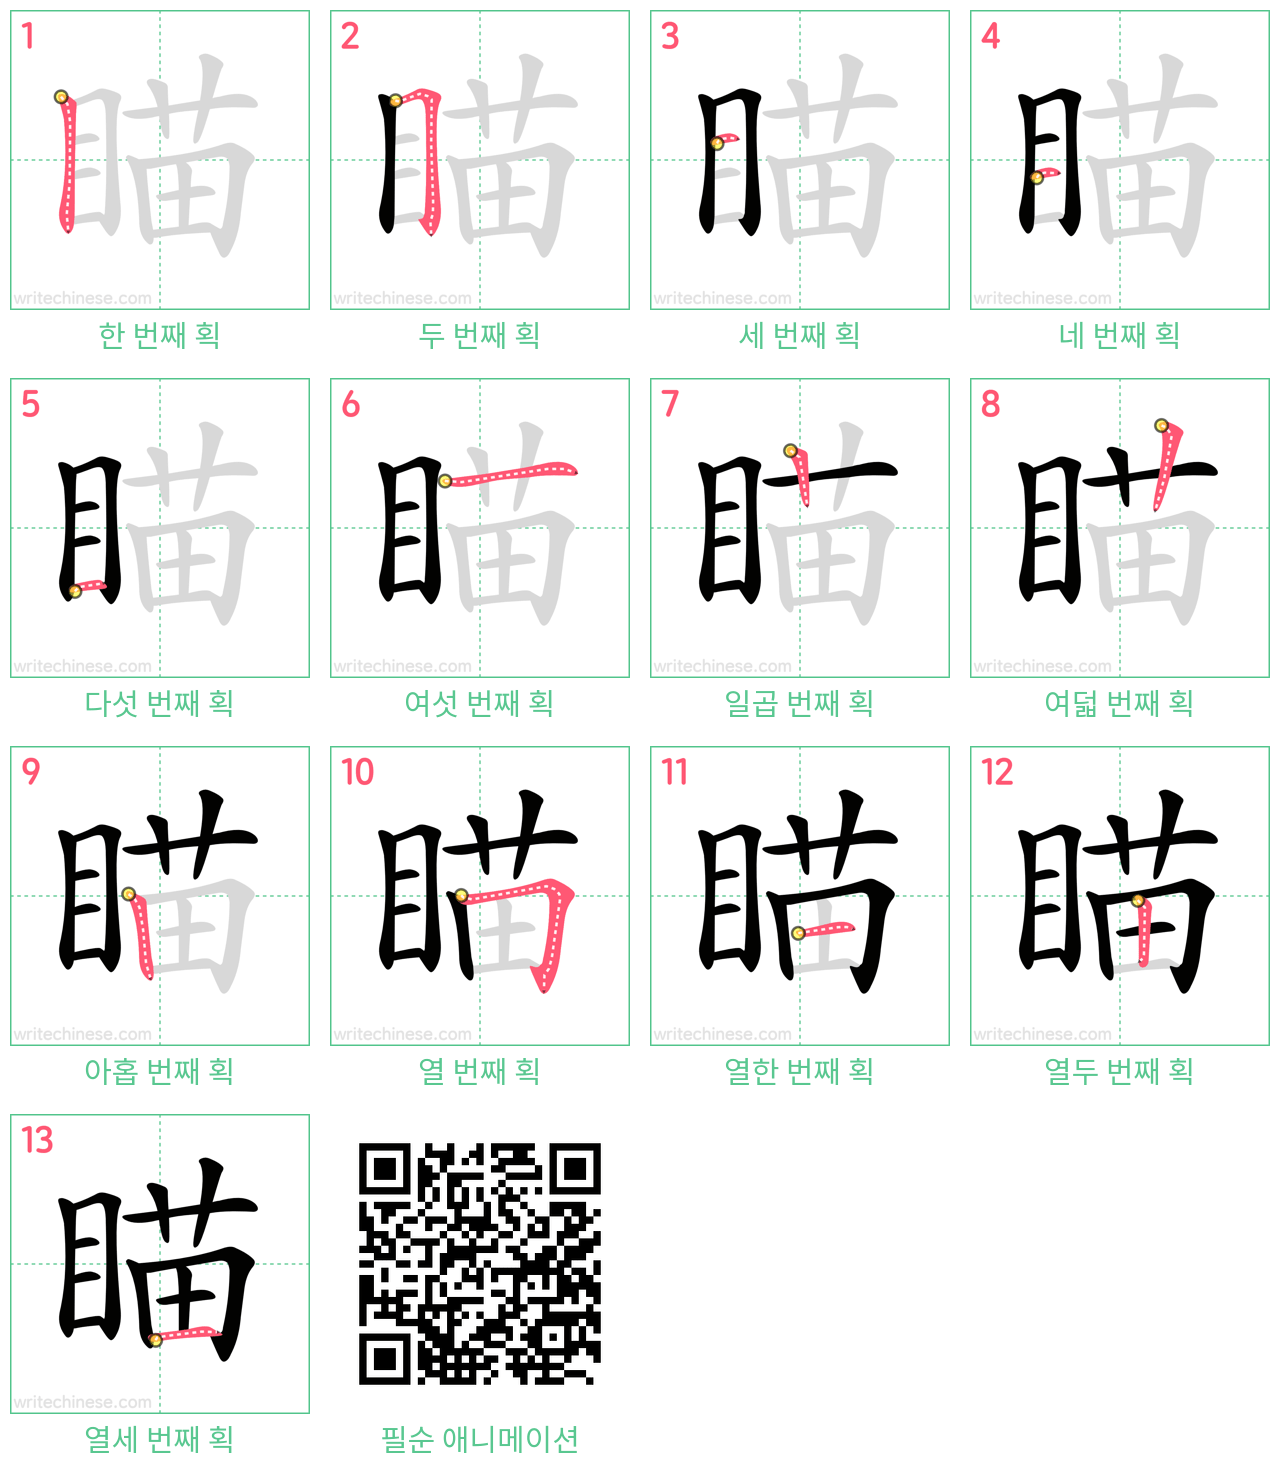 瞄 step-by-step stroke order diagrams